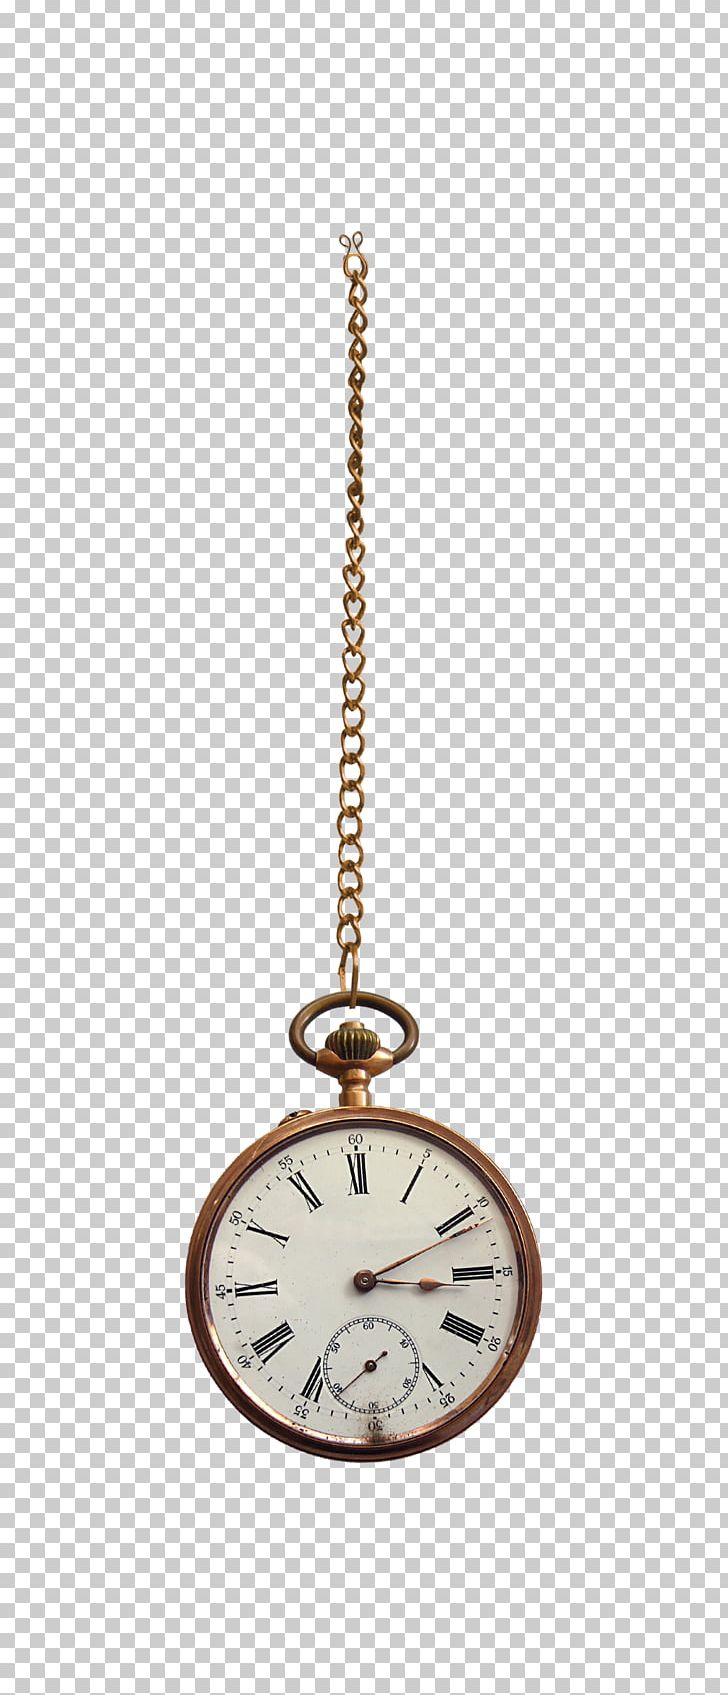 Pocket Watch Charms & Pendants Clock Chain Escapement PNG, Clipart, Avatan, Avatan Plus, Chain, Charms Pendants, Clock Free PNG Download